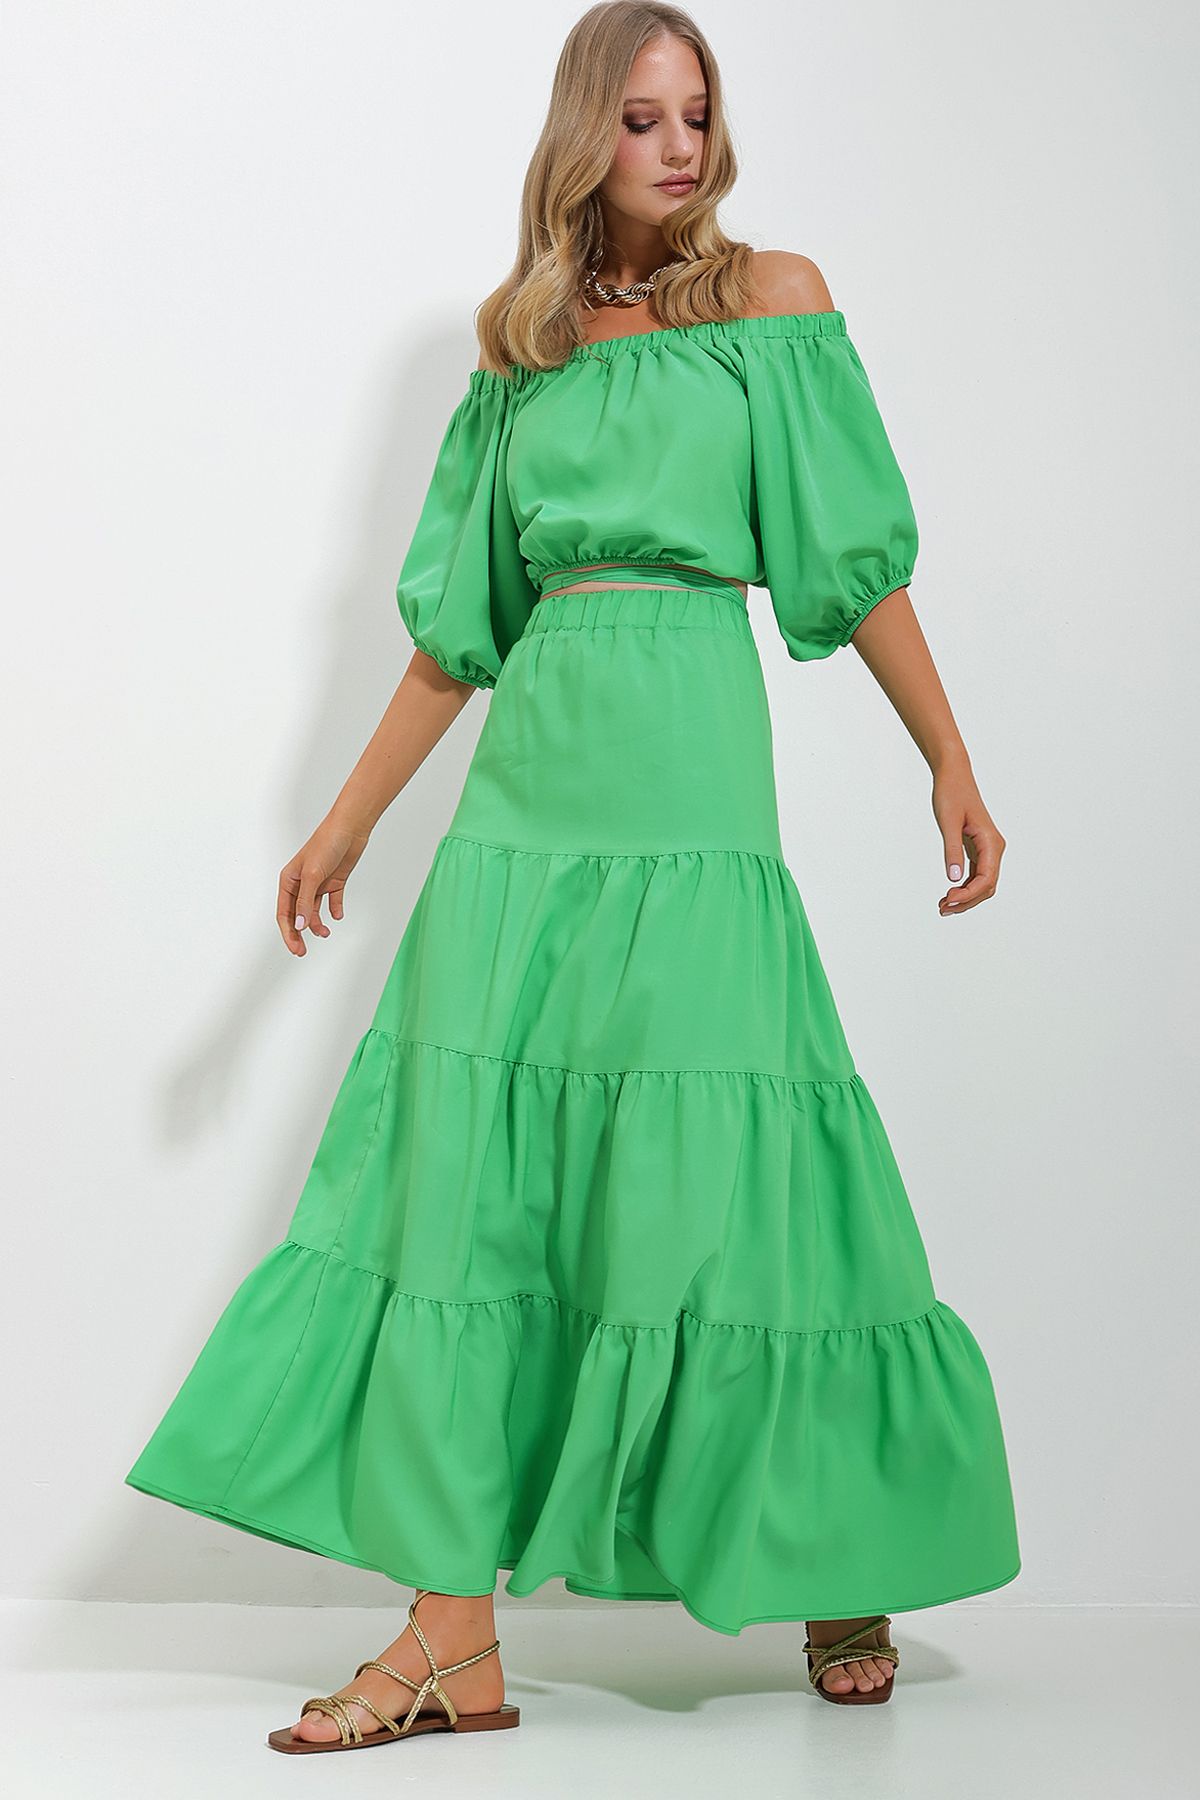 Trend Alaçatı Stili Kadın Yeşil Madonna Yaka Crop Bluz Büzgülü İçi Astarlı Etek Poplin Takım ALC-X11649